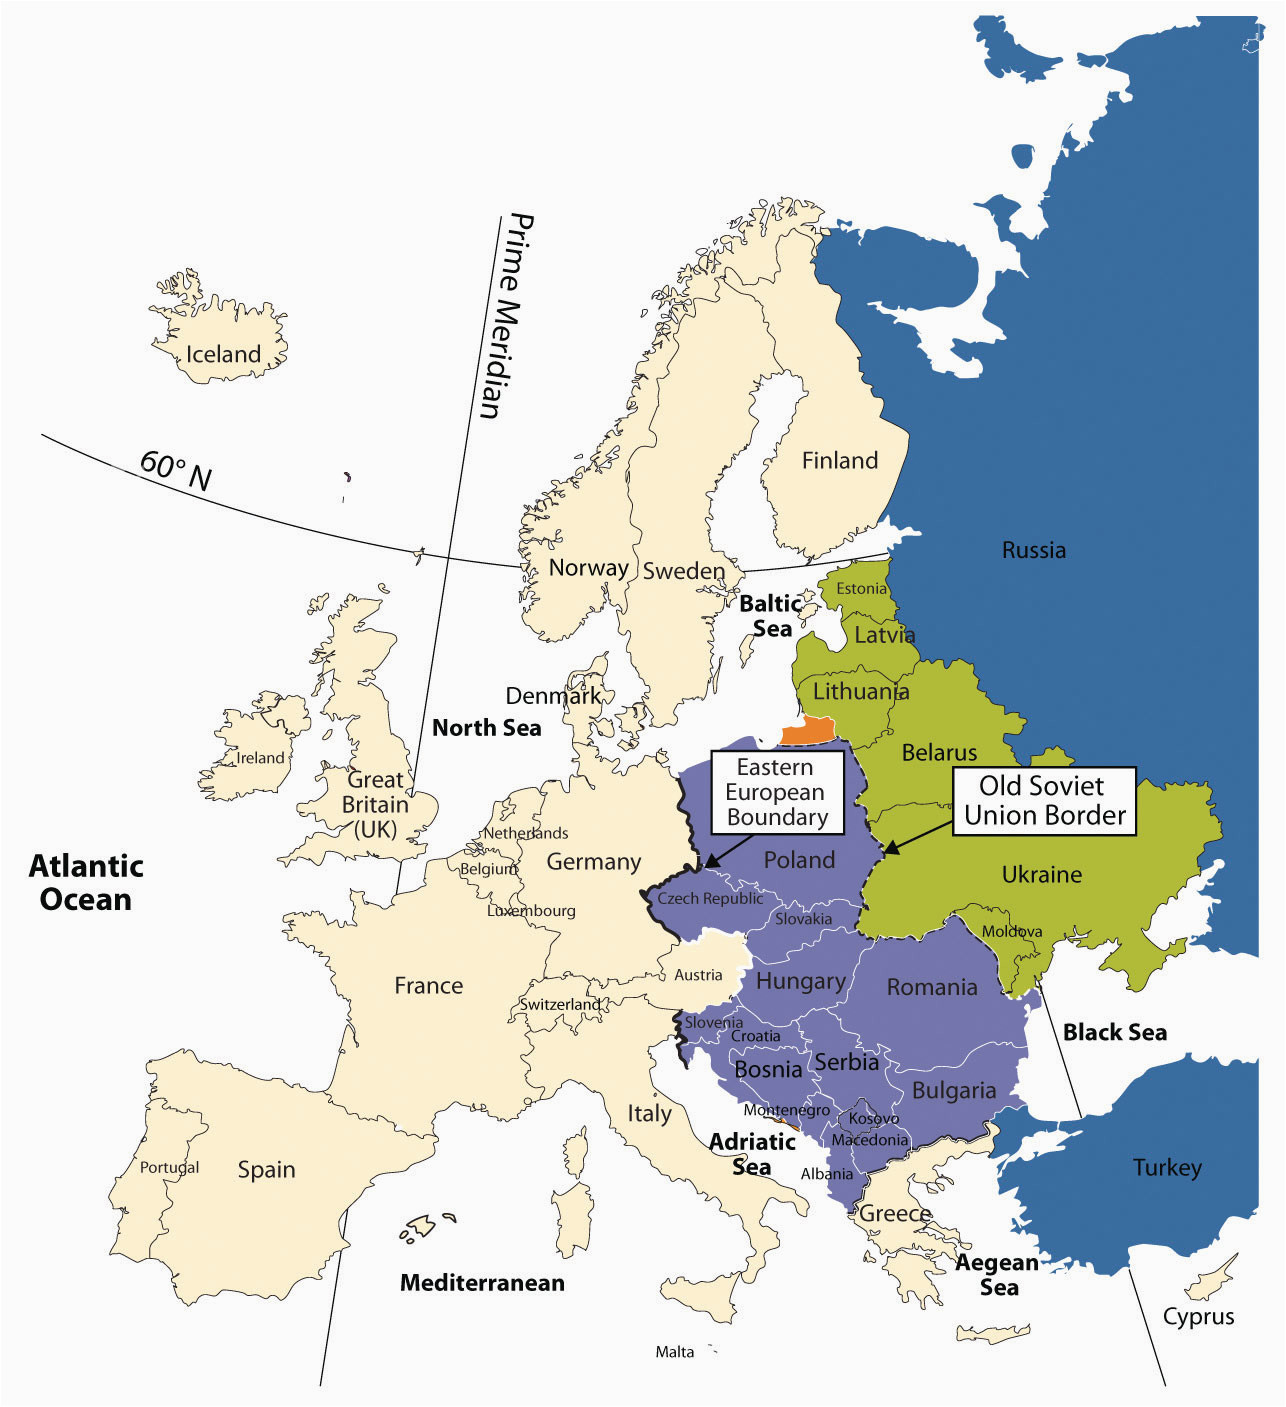 eastern europe